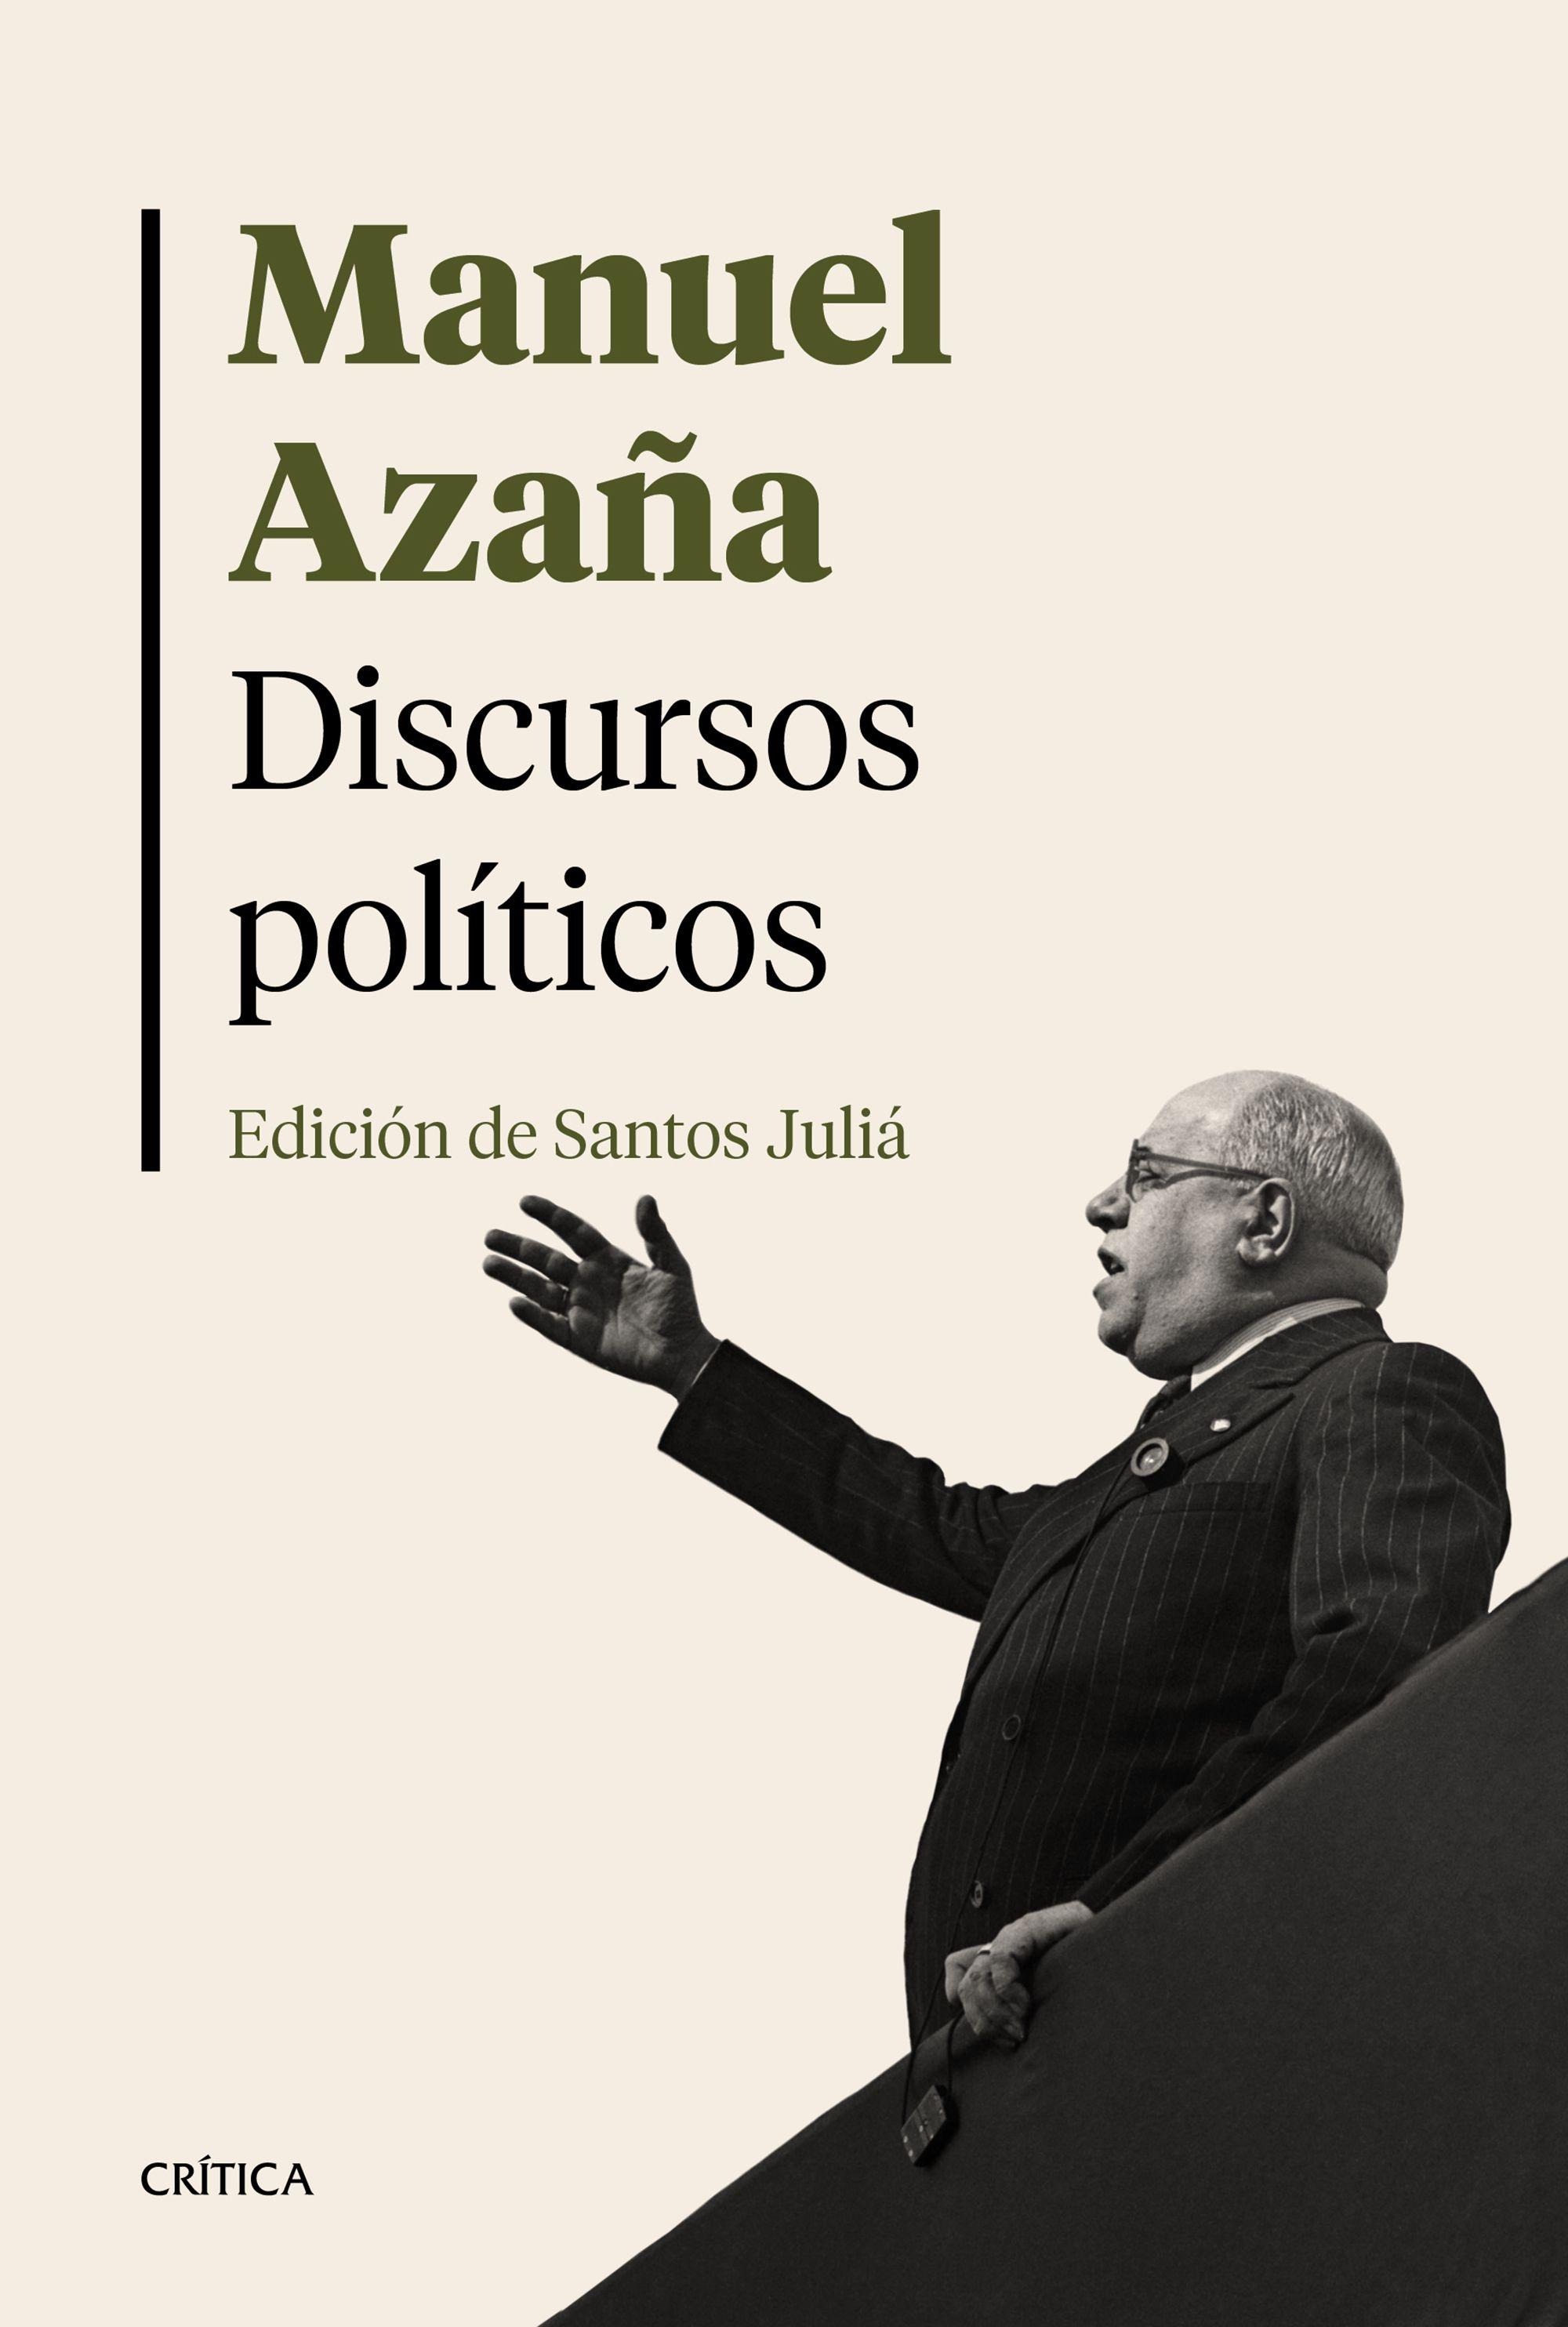 Discursos políticos "Edición de Santos Juliá". 